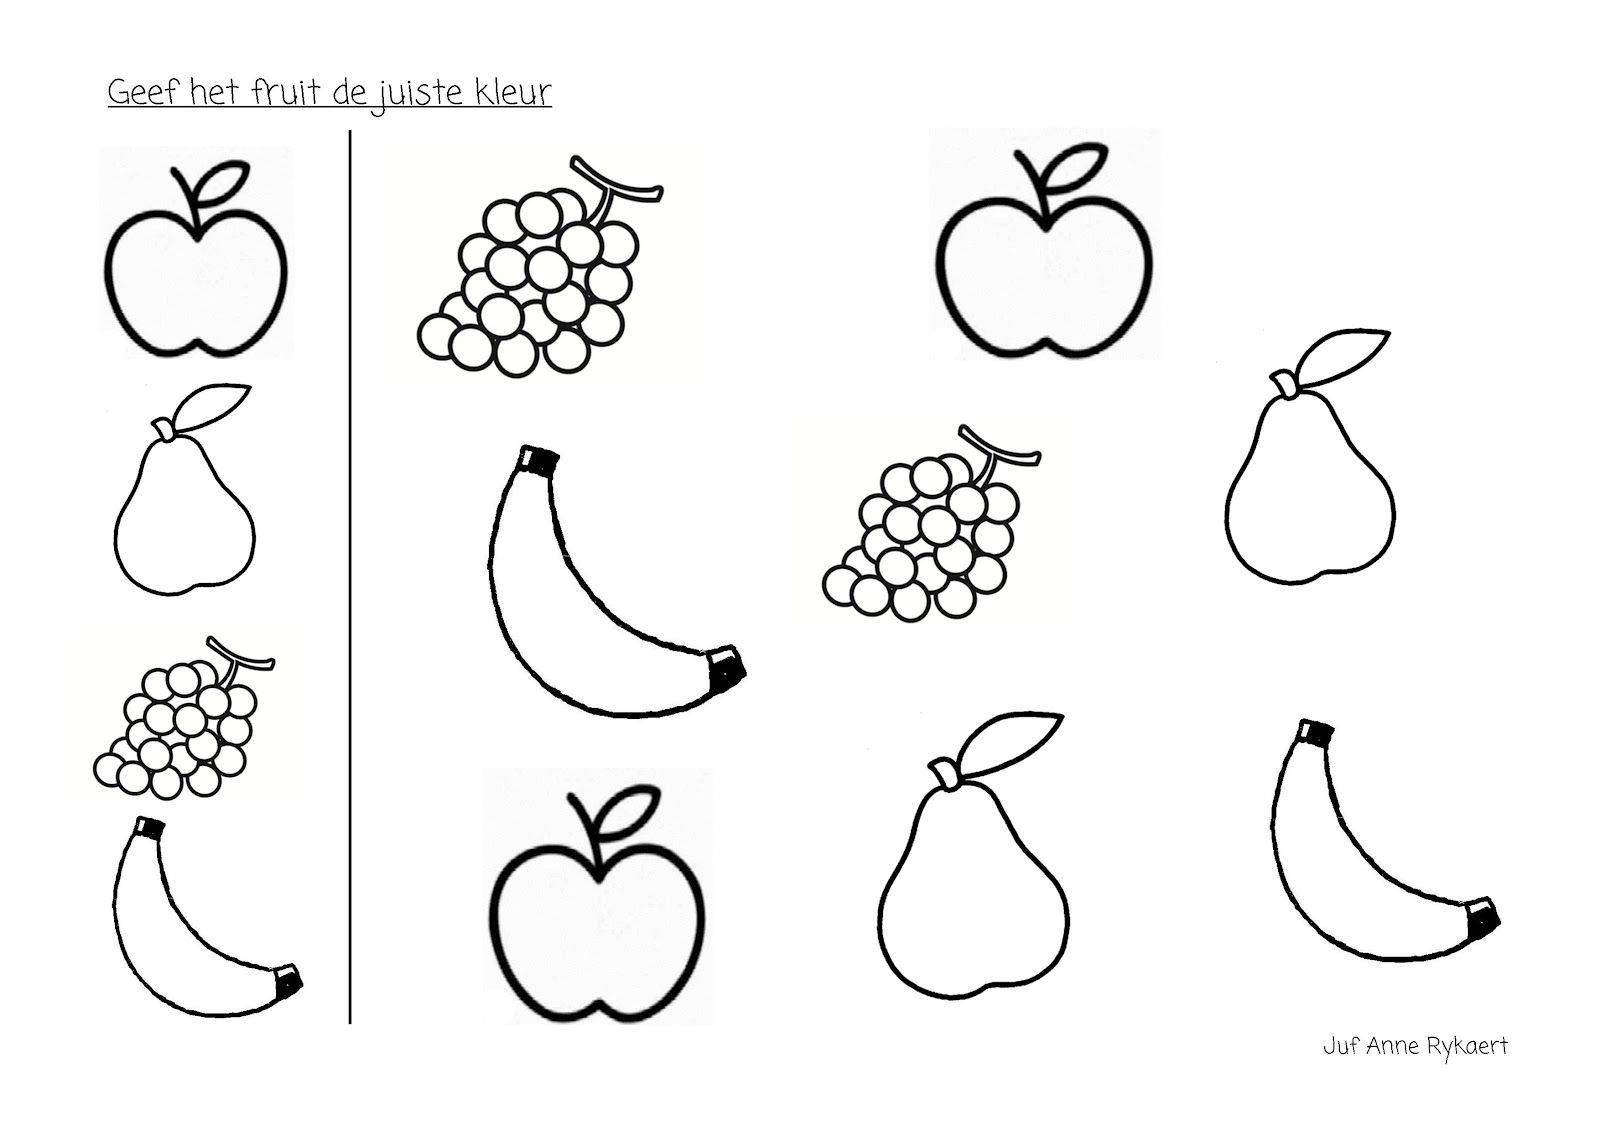 Учимся рисовать с детьми фрукты, овощи и ягоды - медицинский портал